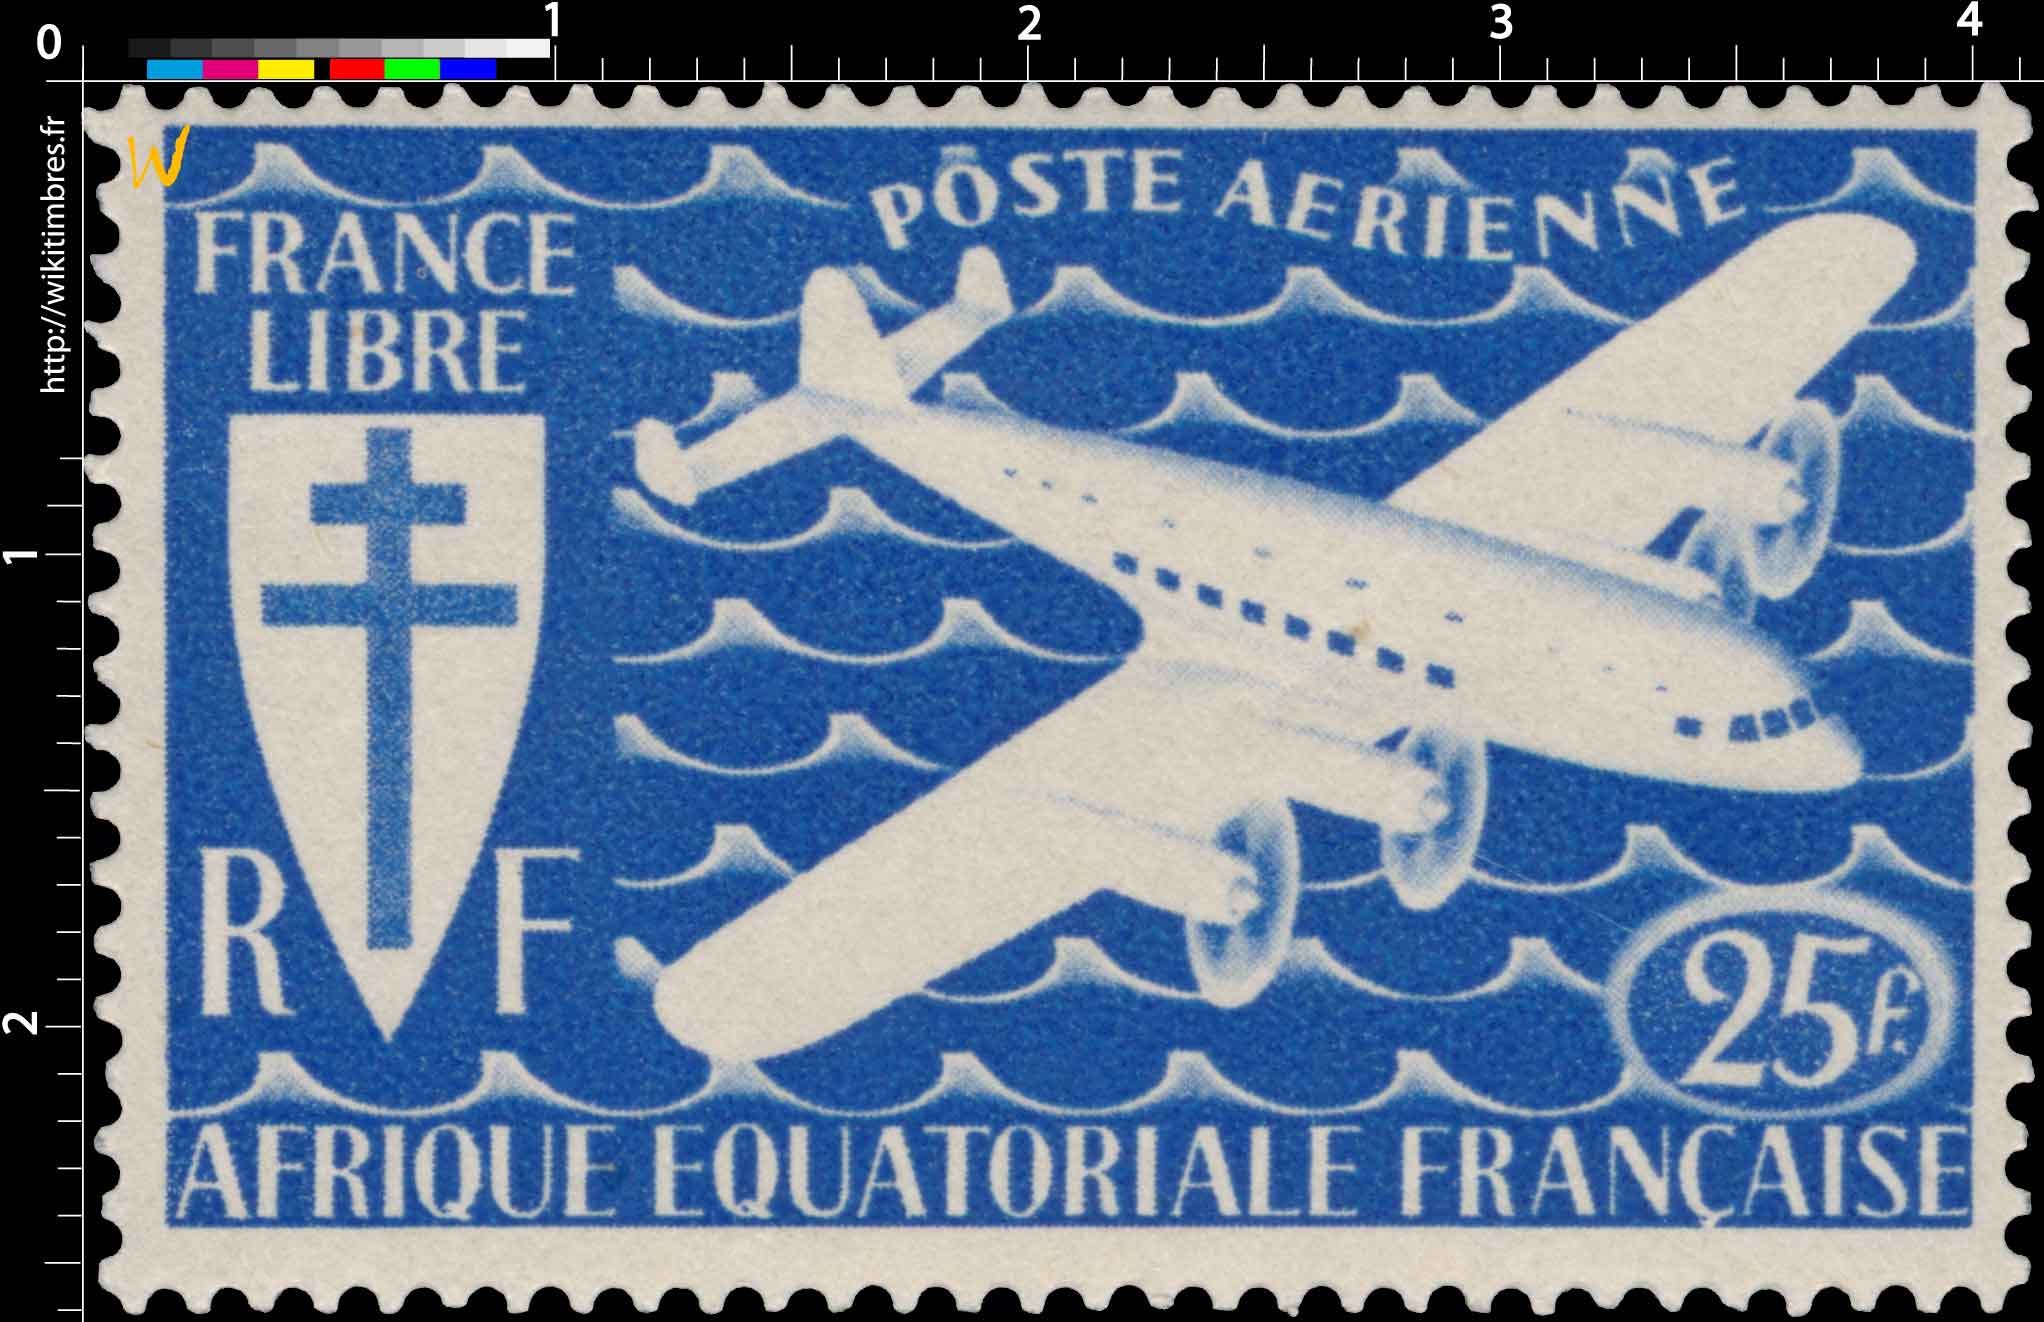 France libre Afrique Équatoriale Française poste aérienne